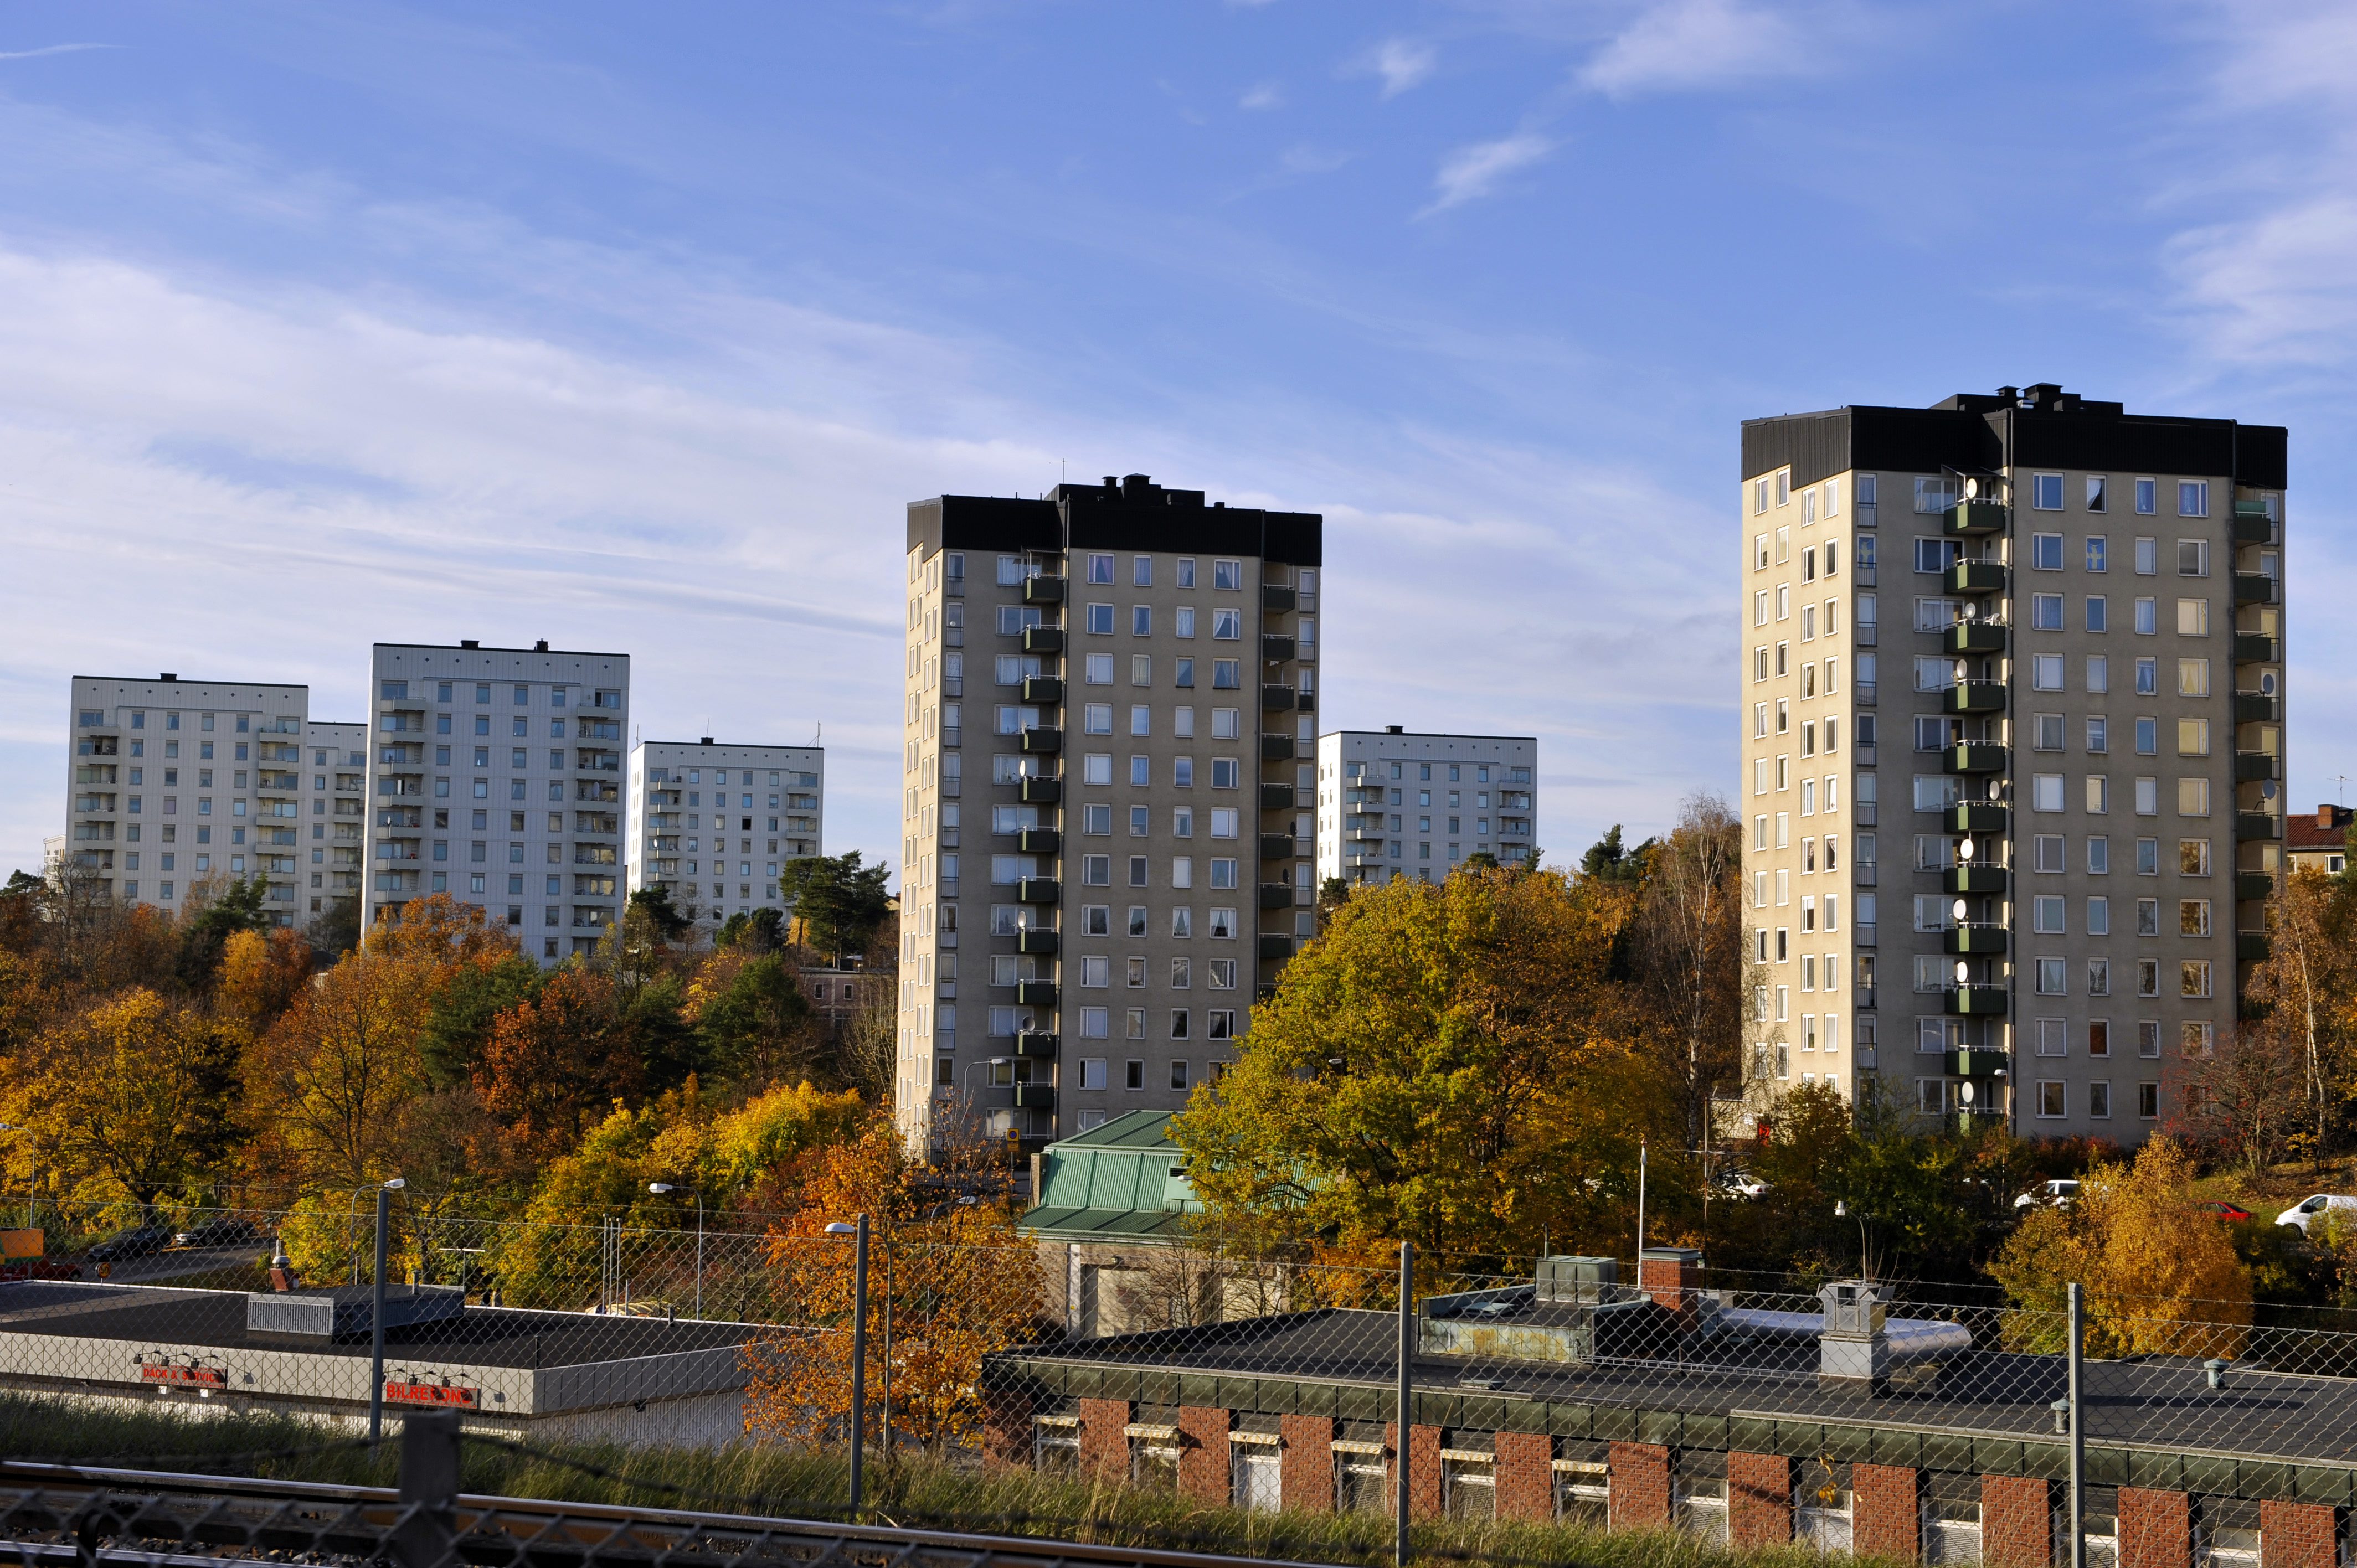 Grannskapet väcktes när explosioner ekade mellan höghusen i Rågsved- och Hagsätraområdet.